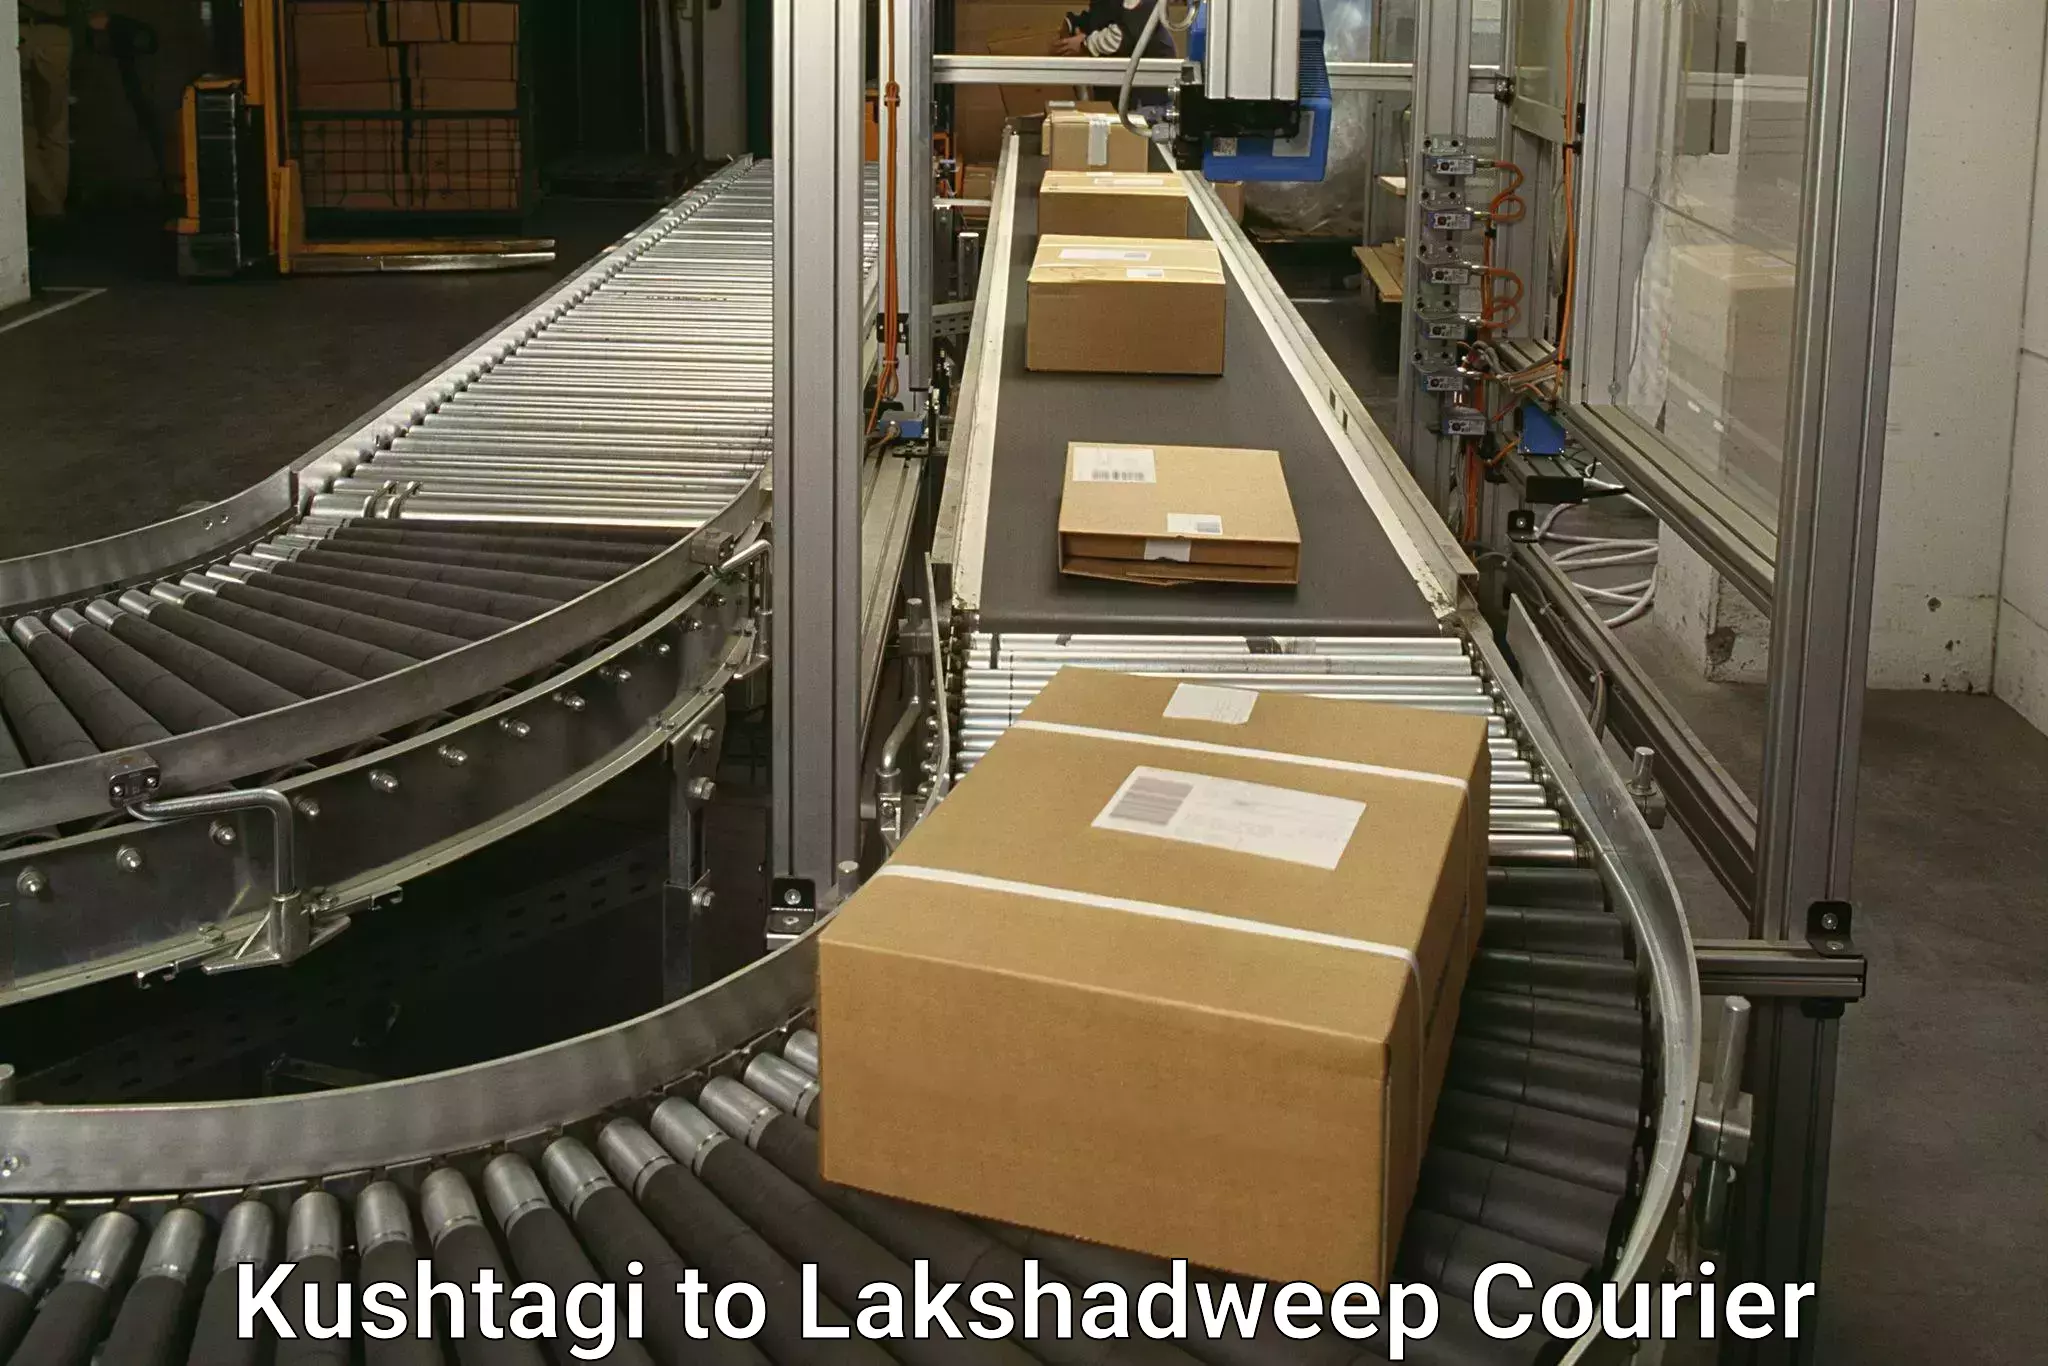 Nationwide courier service Kushtagi to Lakshadweep